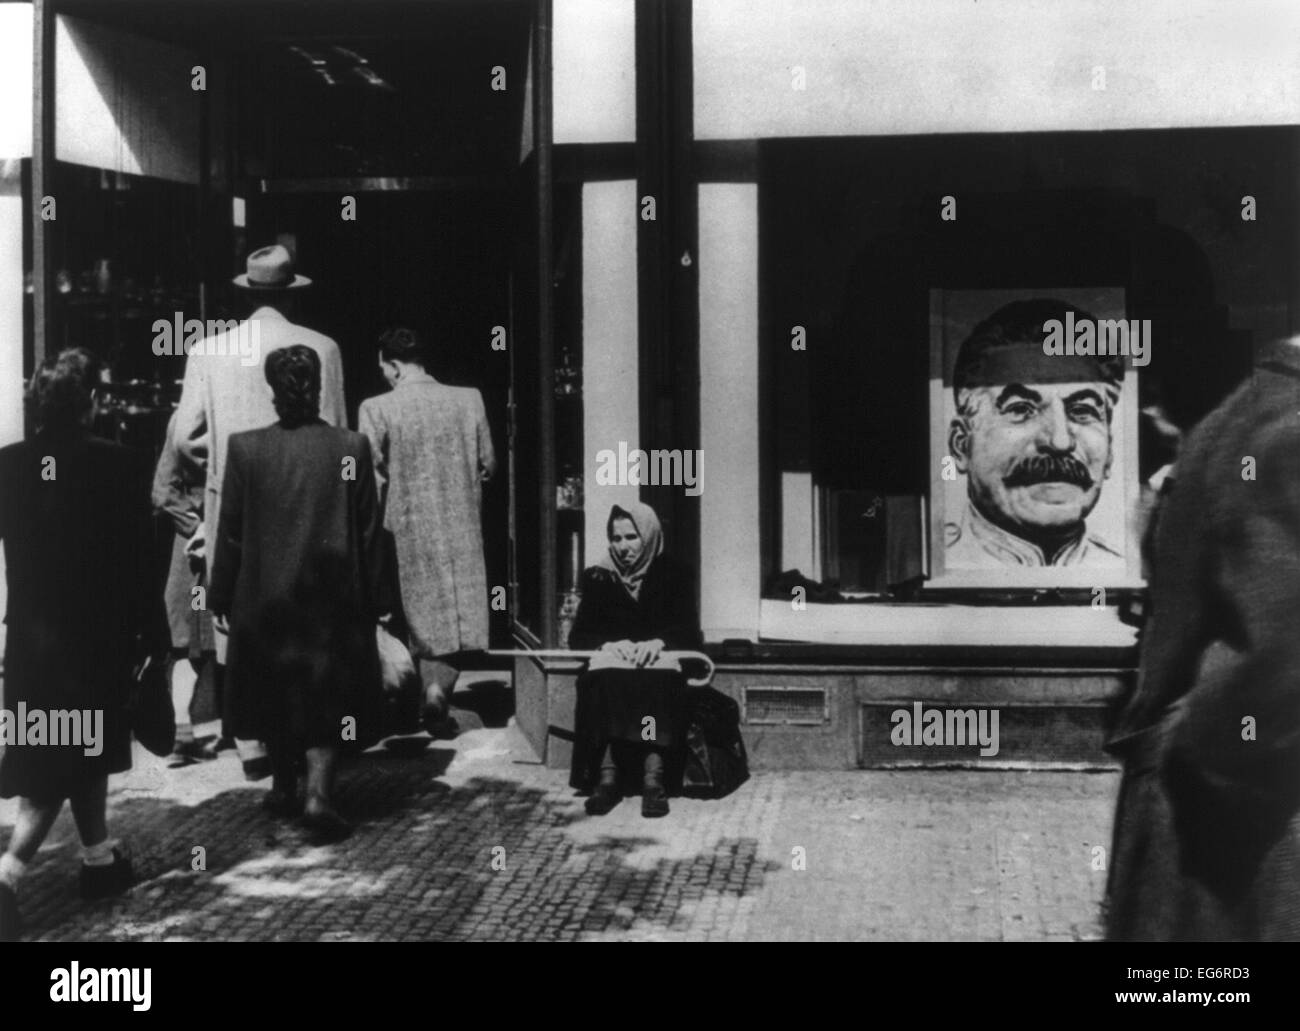 Ritratto di Stalin a Praga nella finestra del negozio al momento del colpo di stato comunista d'Etat di febbraio 1948. - (BSLOC_2014_15_249) Foto Stock